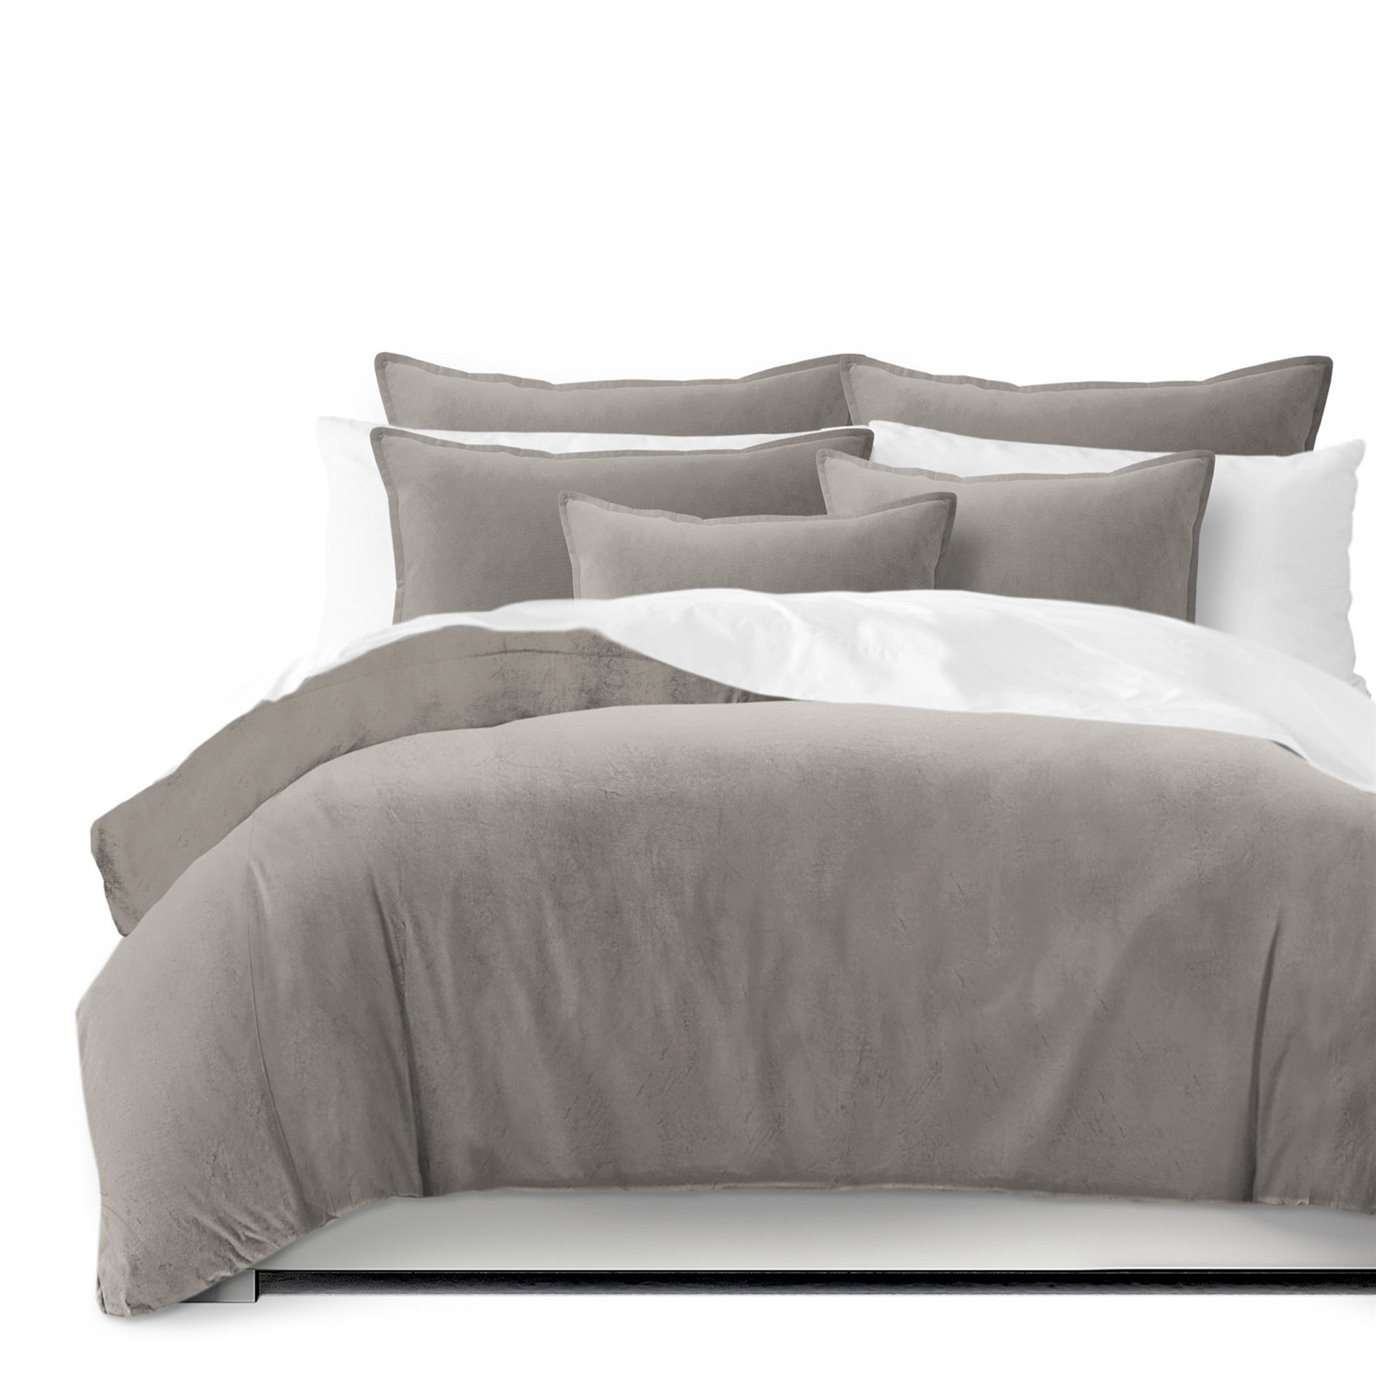 Vanessa Greige Comforter and Pillow Sham(s) Set - Size Full